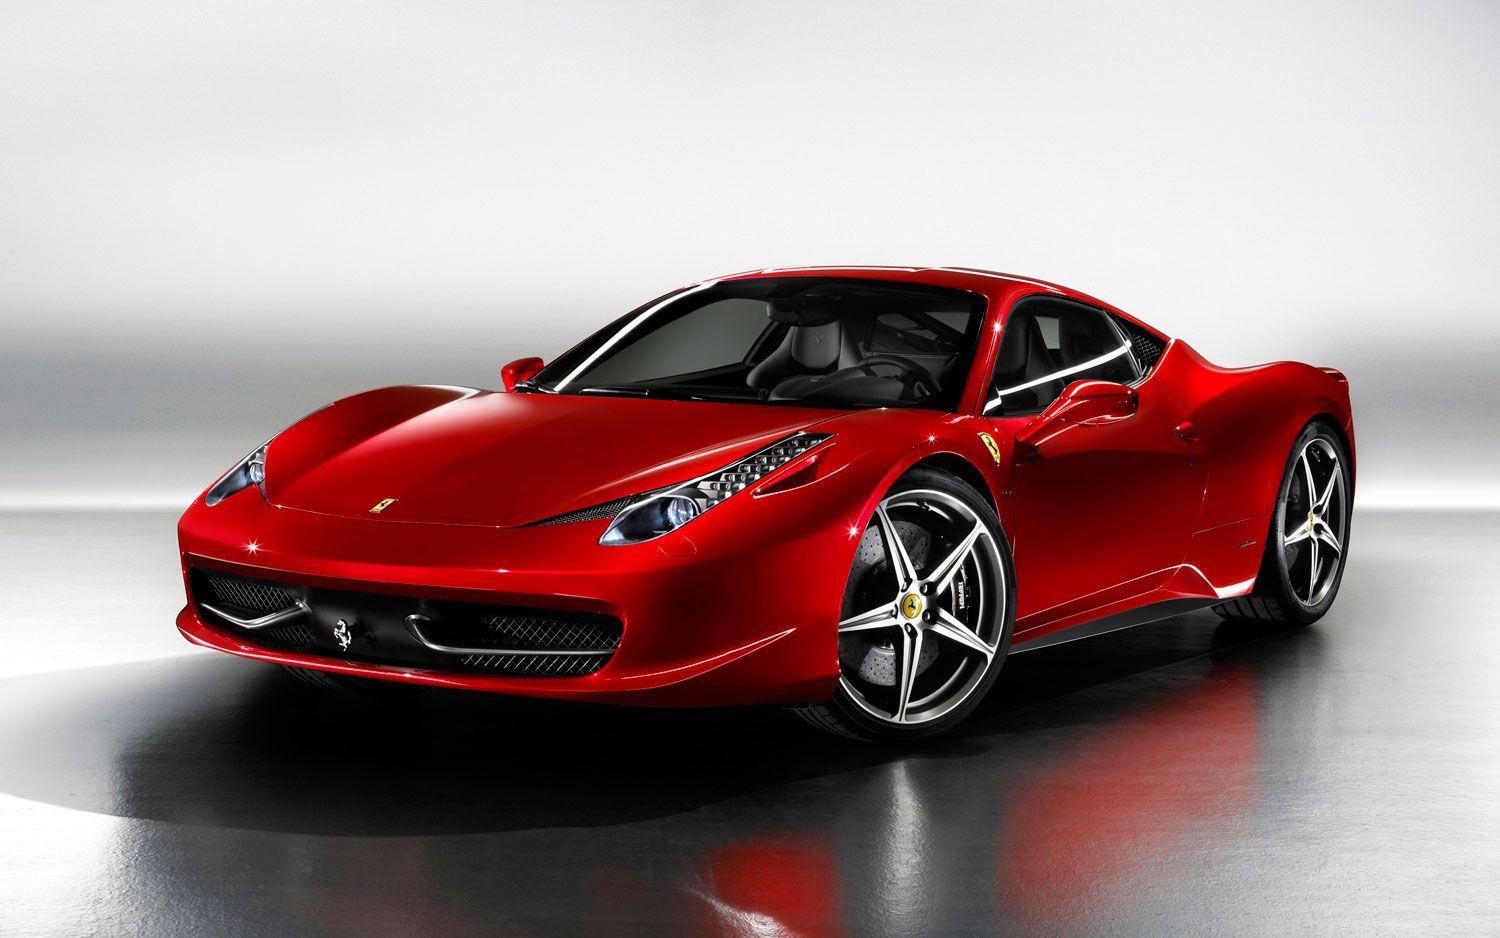 Best Cars Wallpaper For Desktop Full Size High Resolution Ferrari